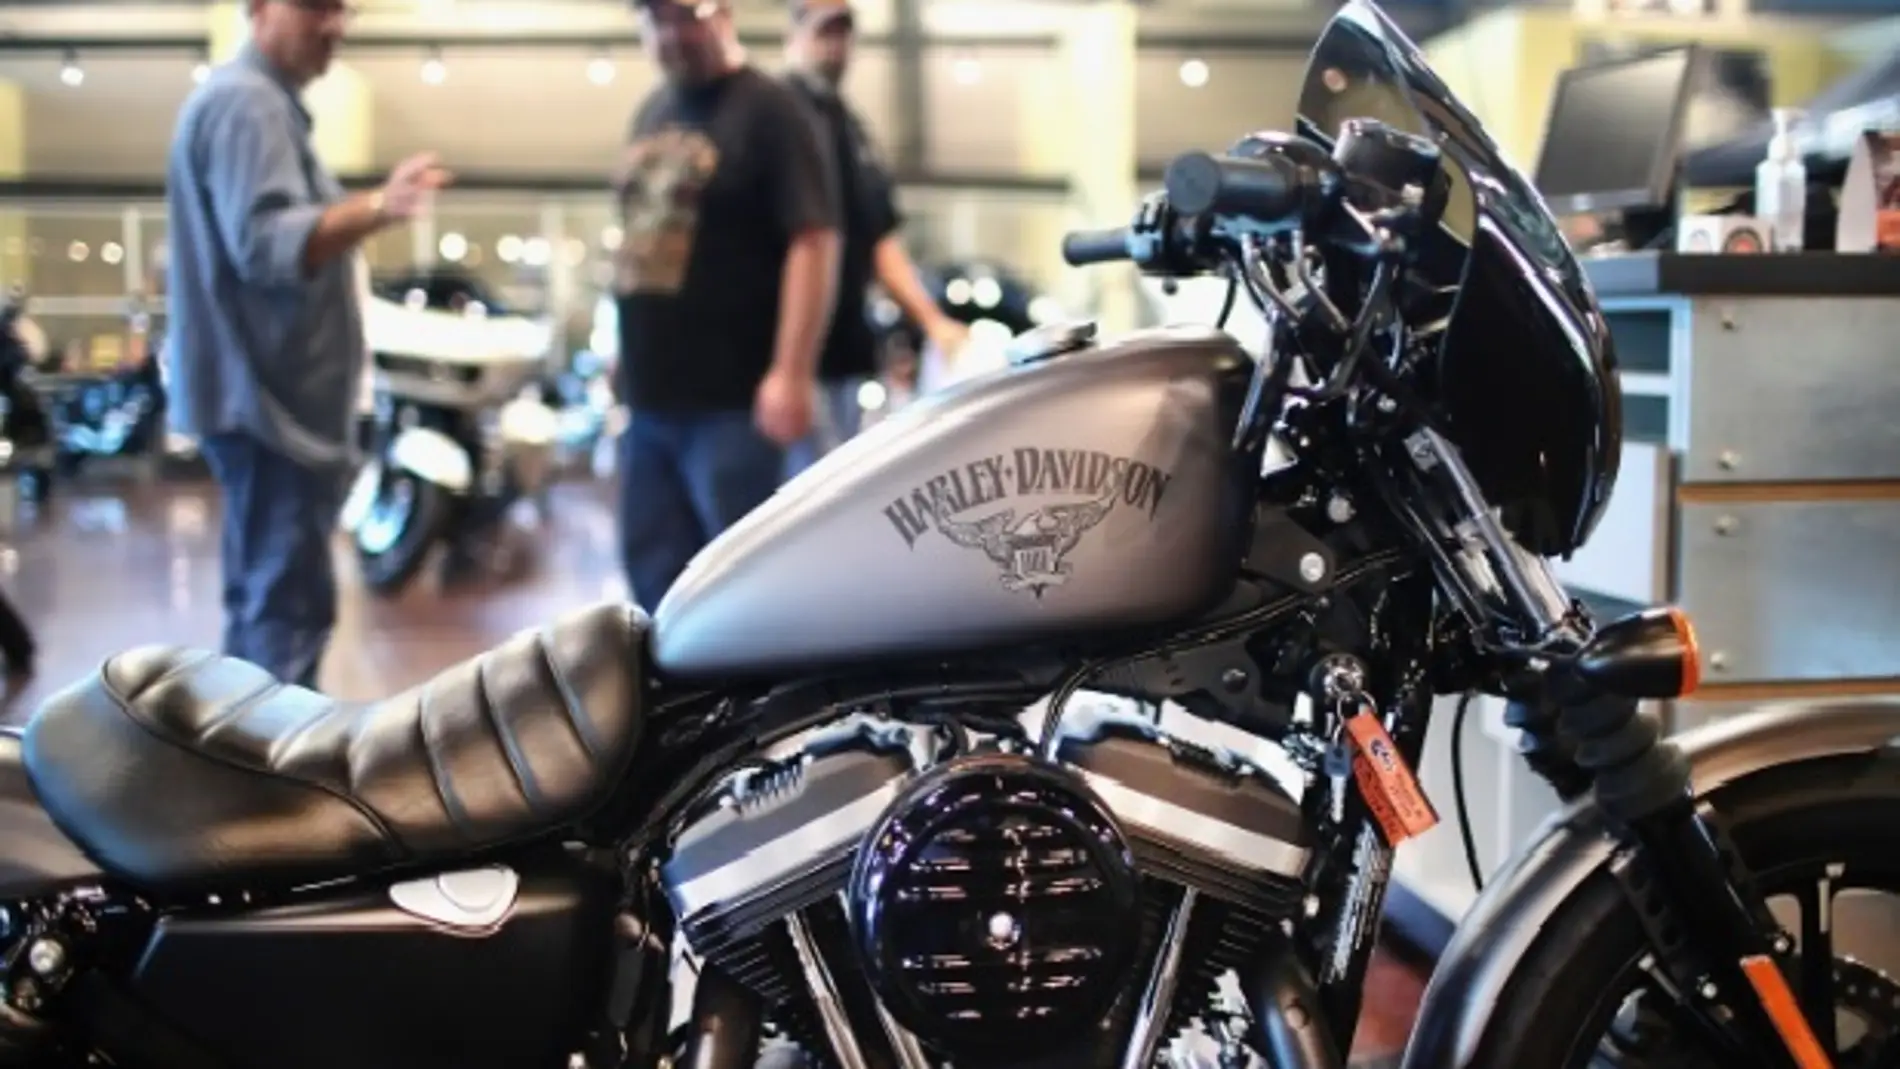 Harley Davidson trasladará parte de su producción fuera de EE.UU. por el aumento de los aranceles europeos 